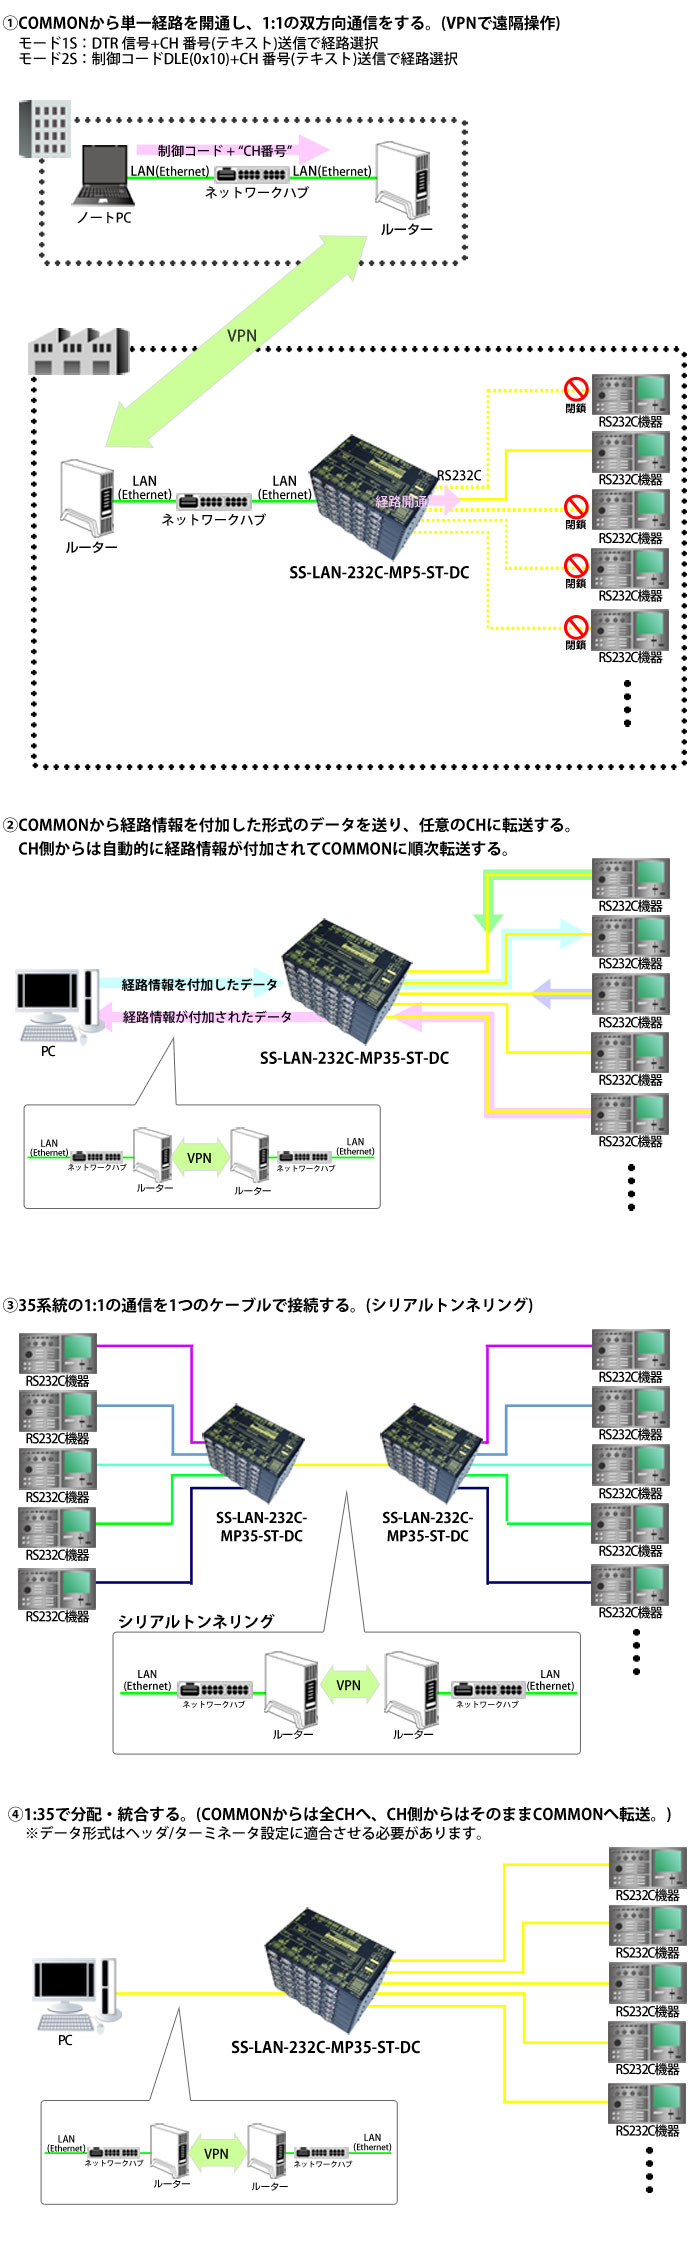 SS-LAN-232C-MP35-ST-DC接続例